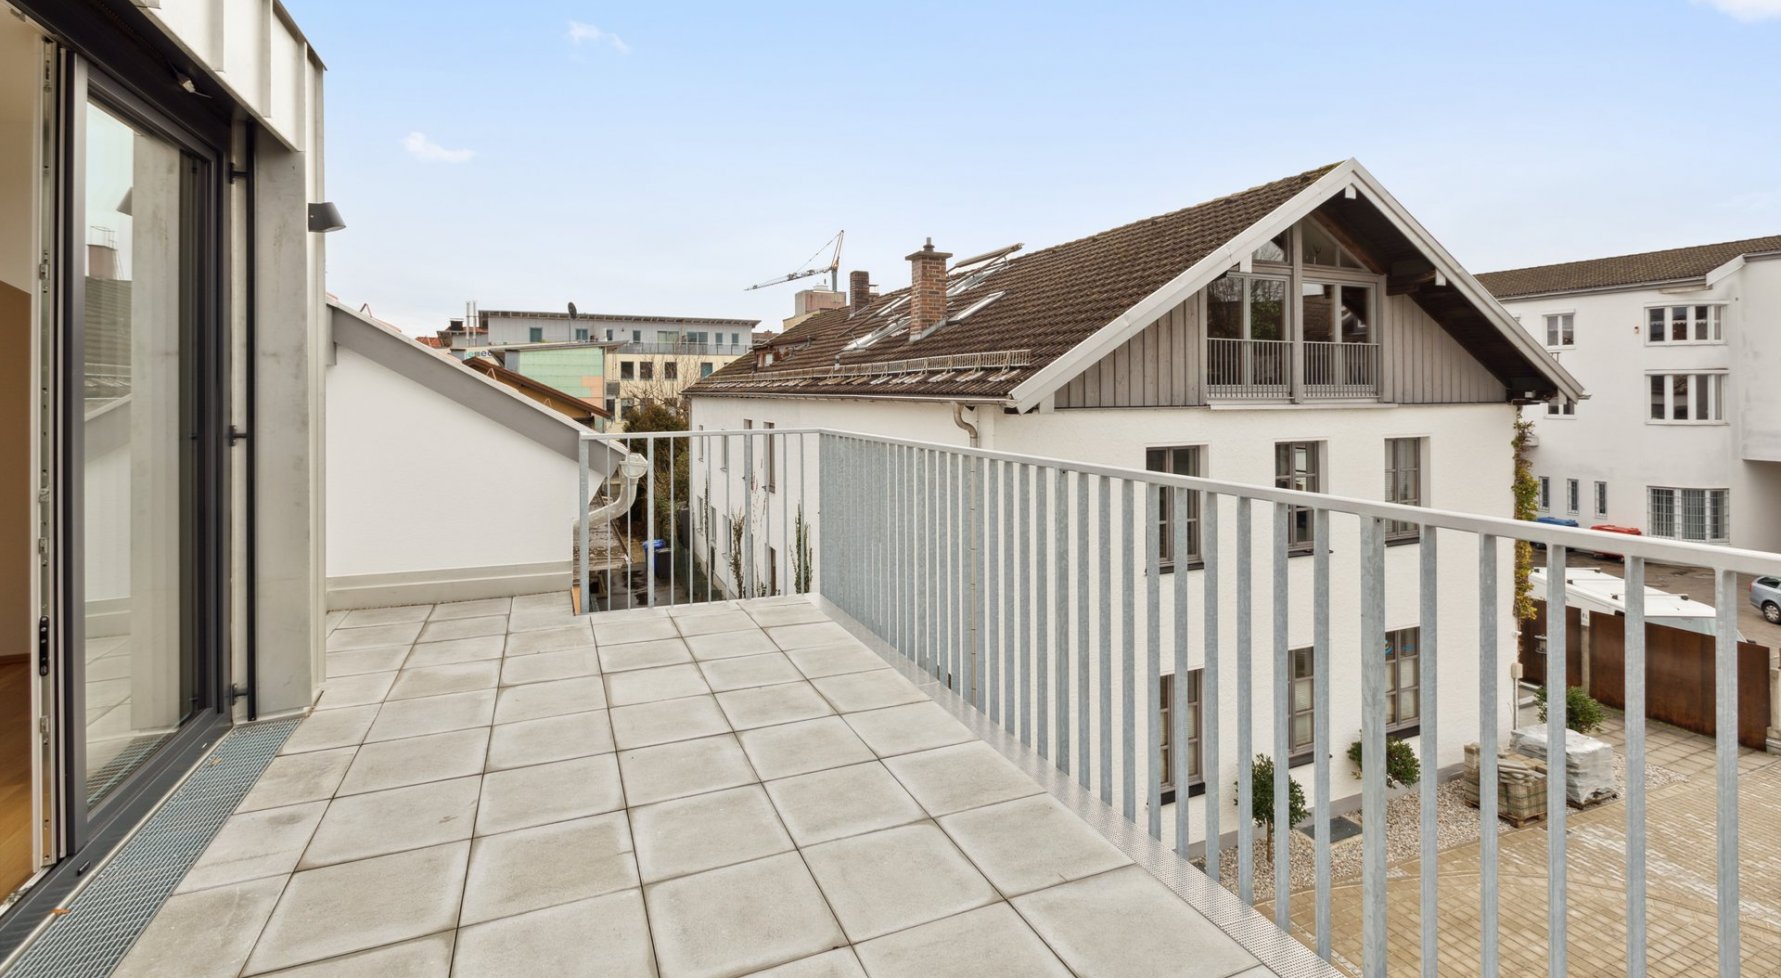 Immobilie in 83395 Bayern - Freilassing : Stylisch moderne Dachgeschoßwohnung - für alle die das Besondere suchen! - bild 1